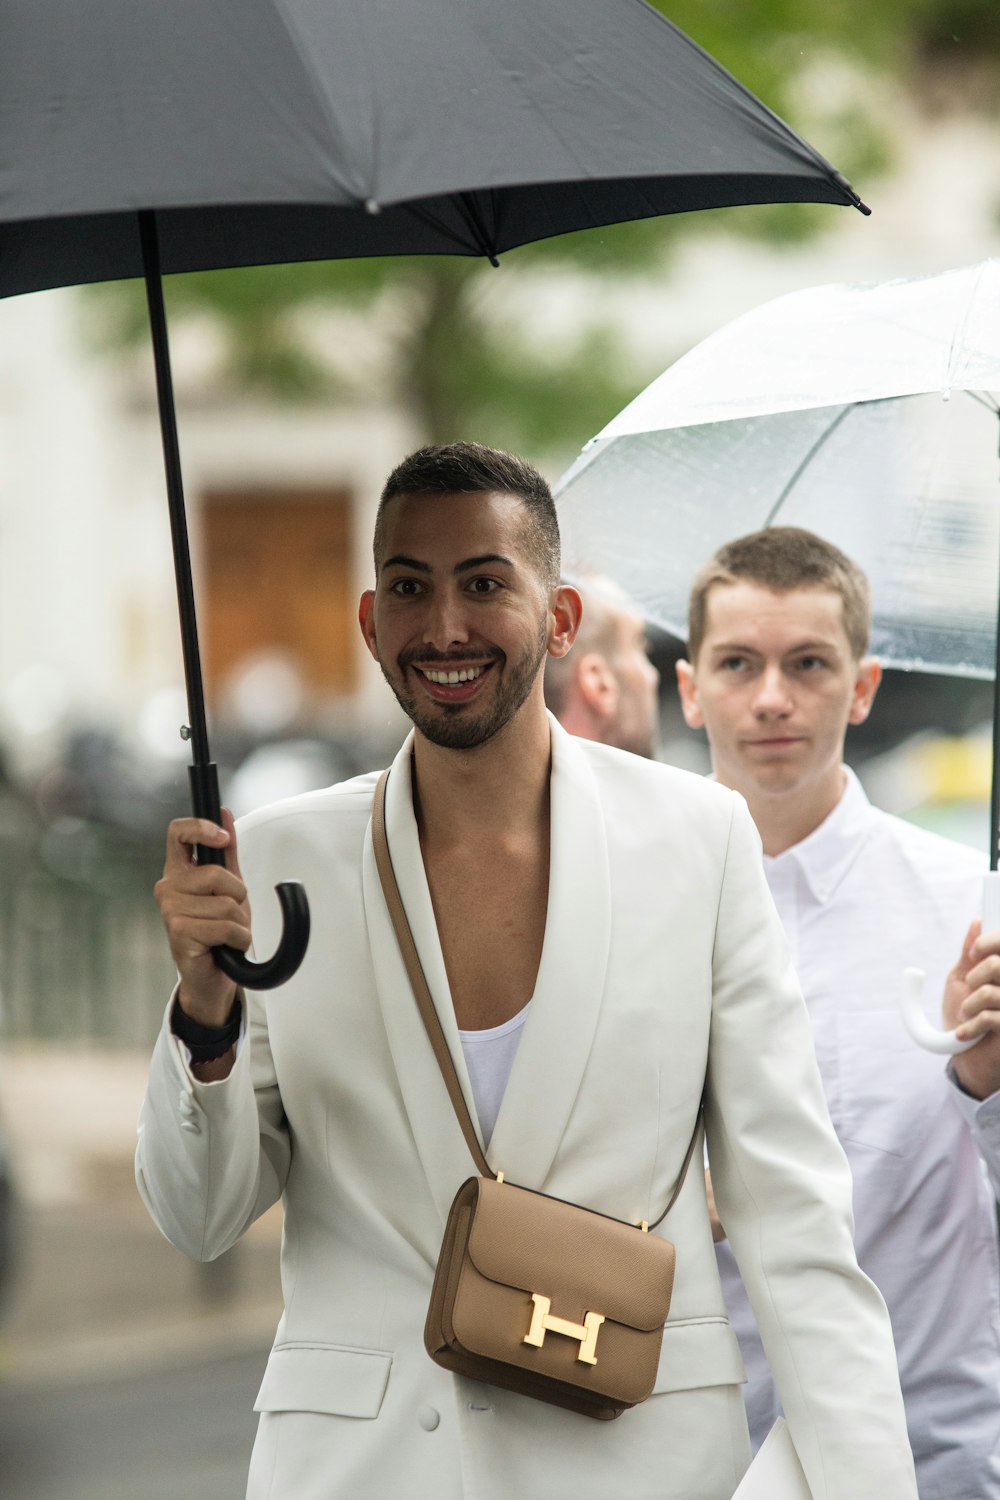 a man holding an umbrella